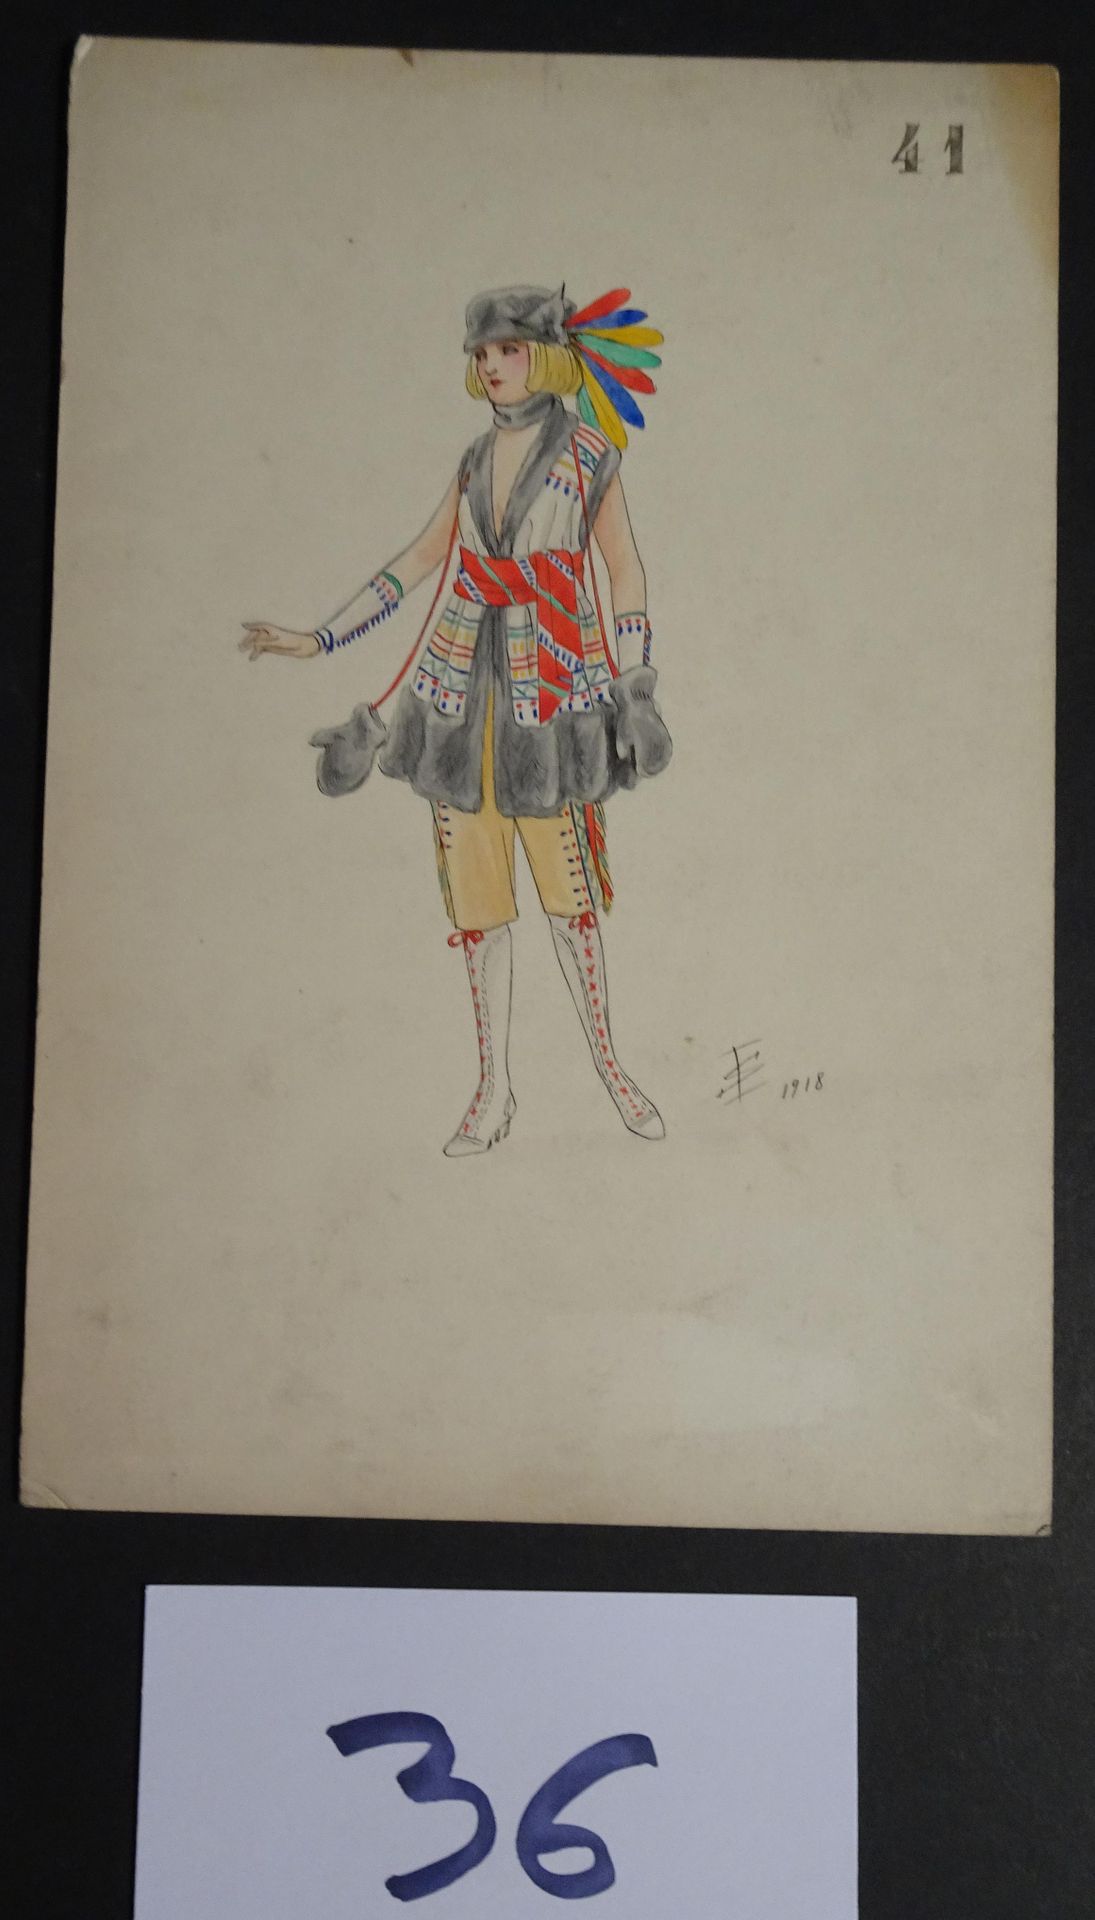 SOKOLOFF SOKOLOFF IGOR (inizio X secolo) 

"Donna con un turbante piumato". Penn&hellip;